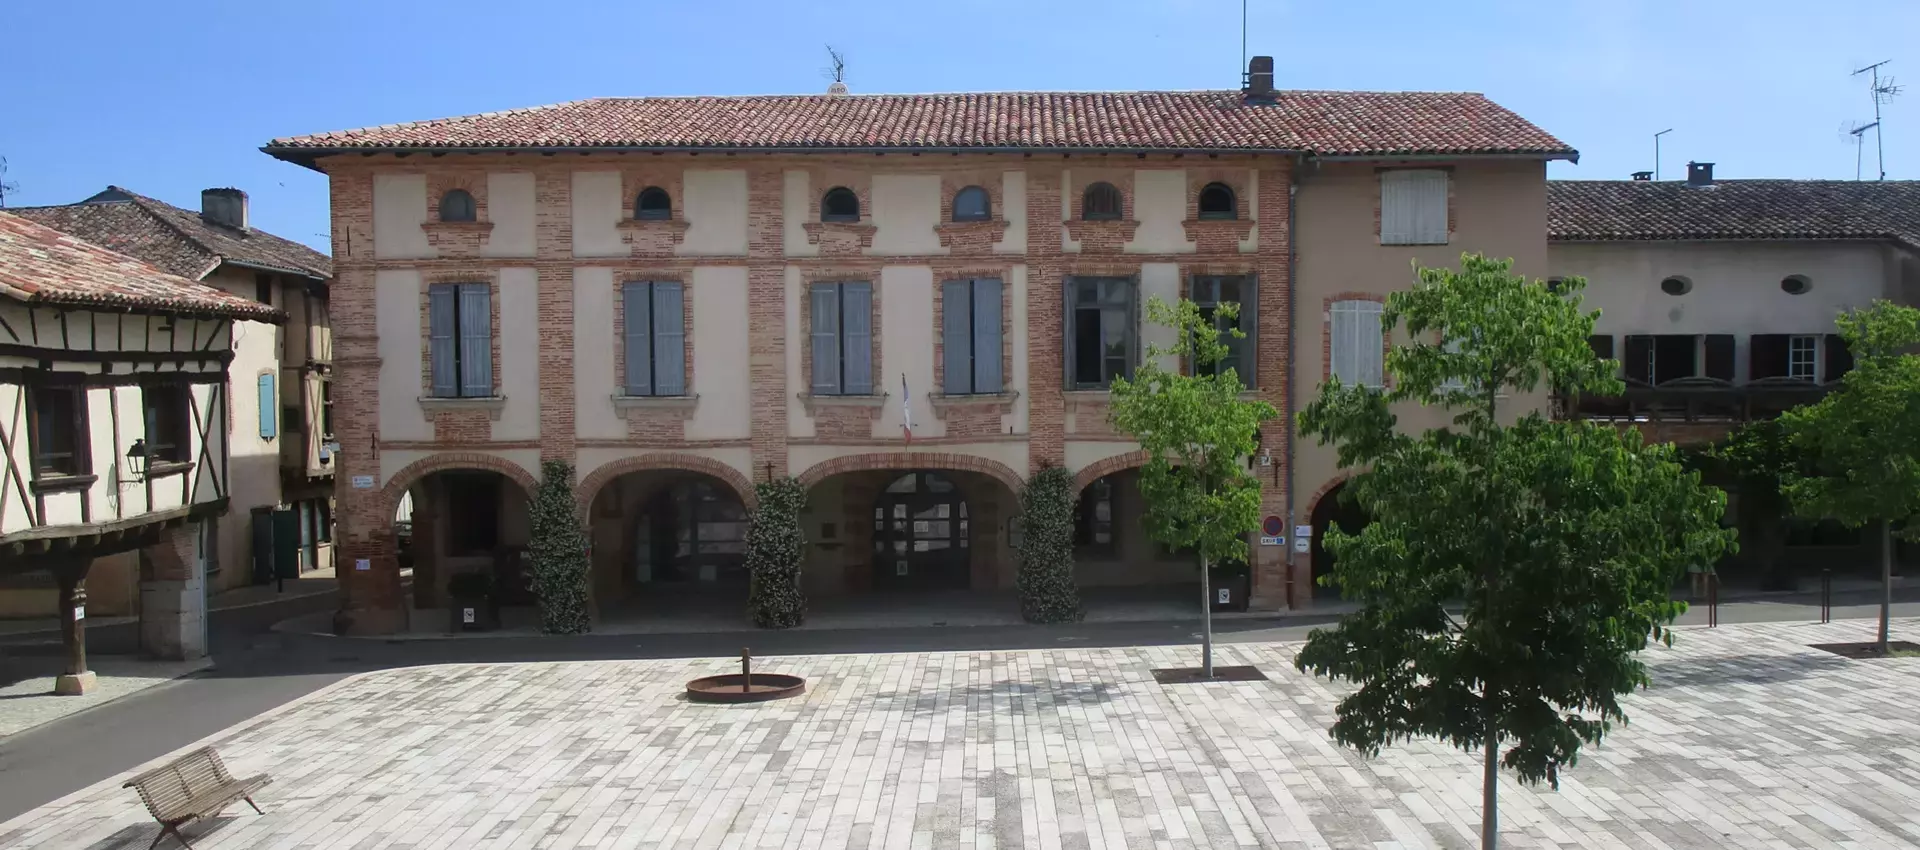 Bienvenue sur le site officiel de la mairie de Réalville (48) Lozère